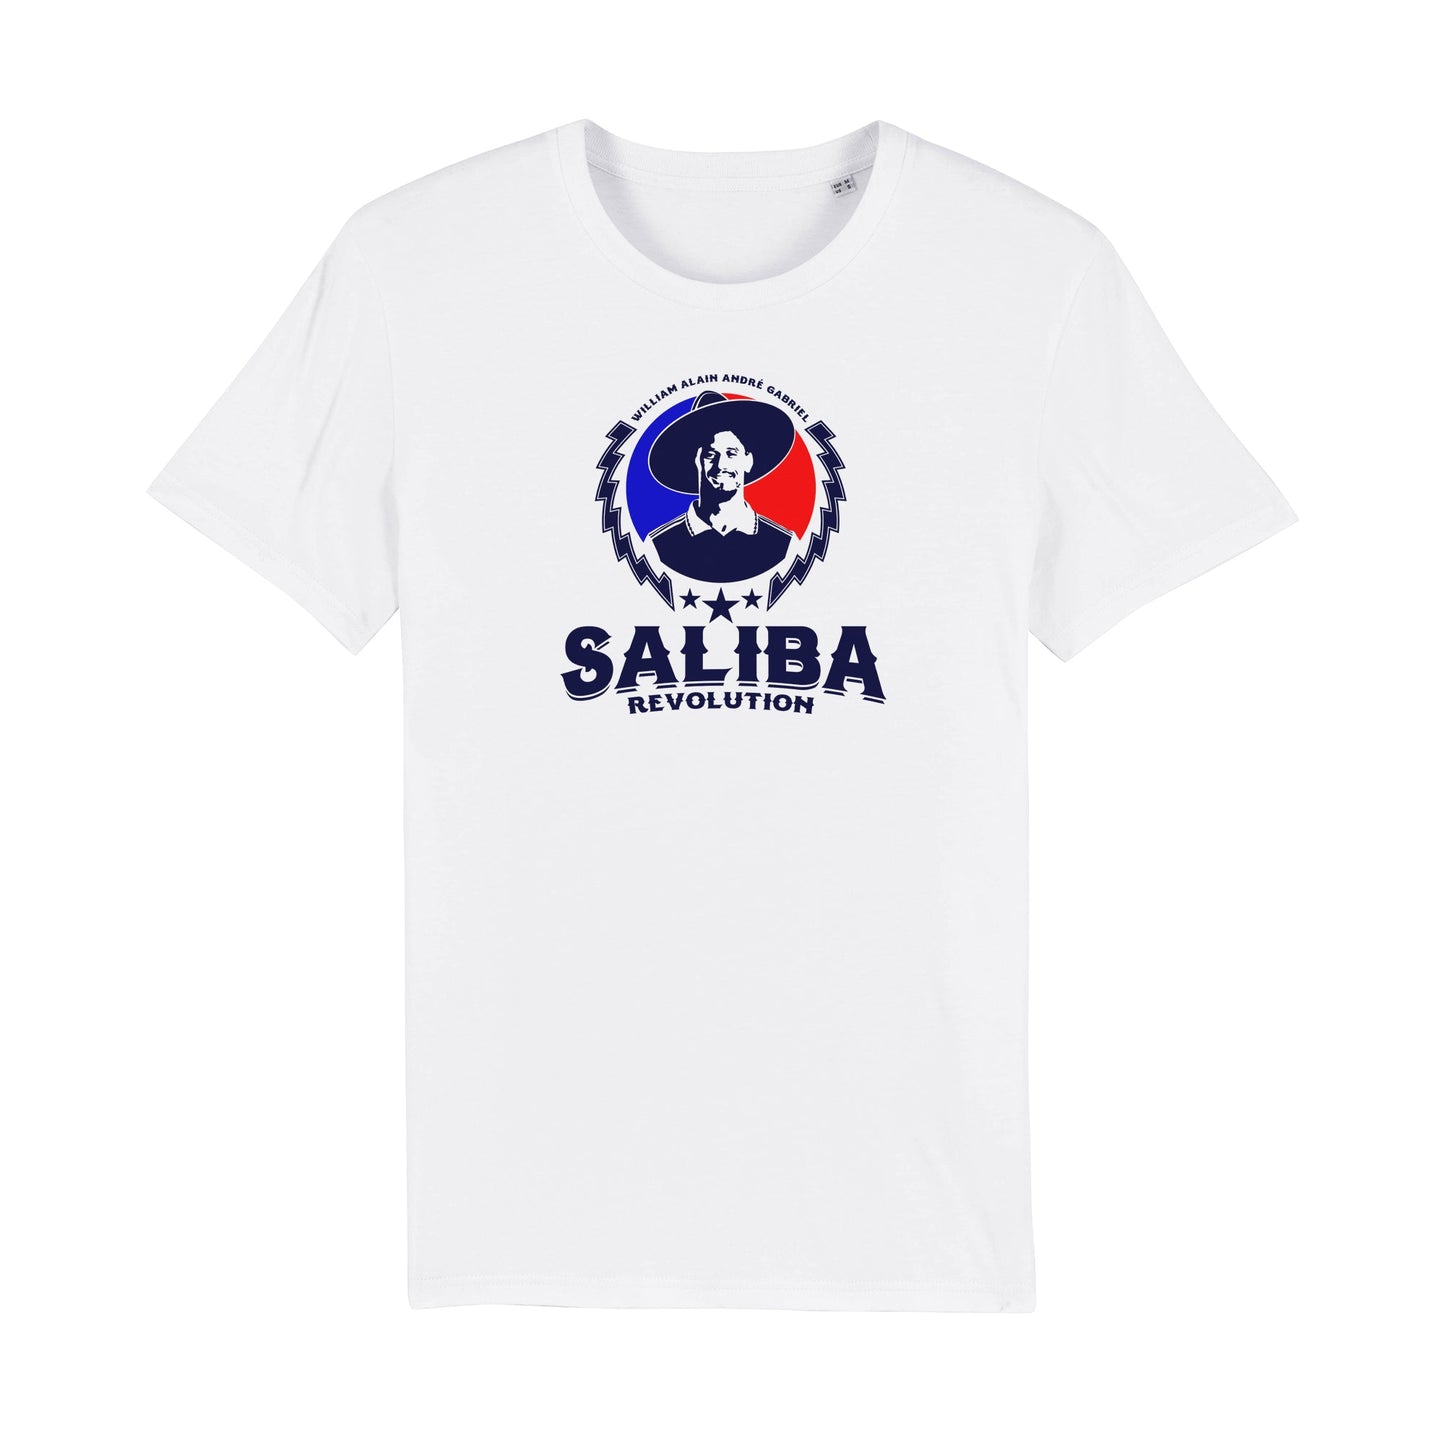 Saliba Revolution Tee